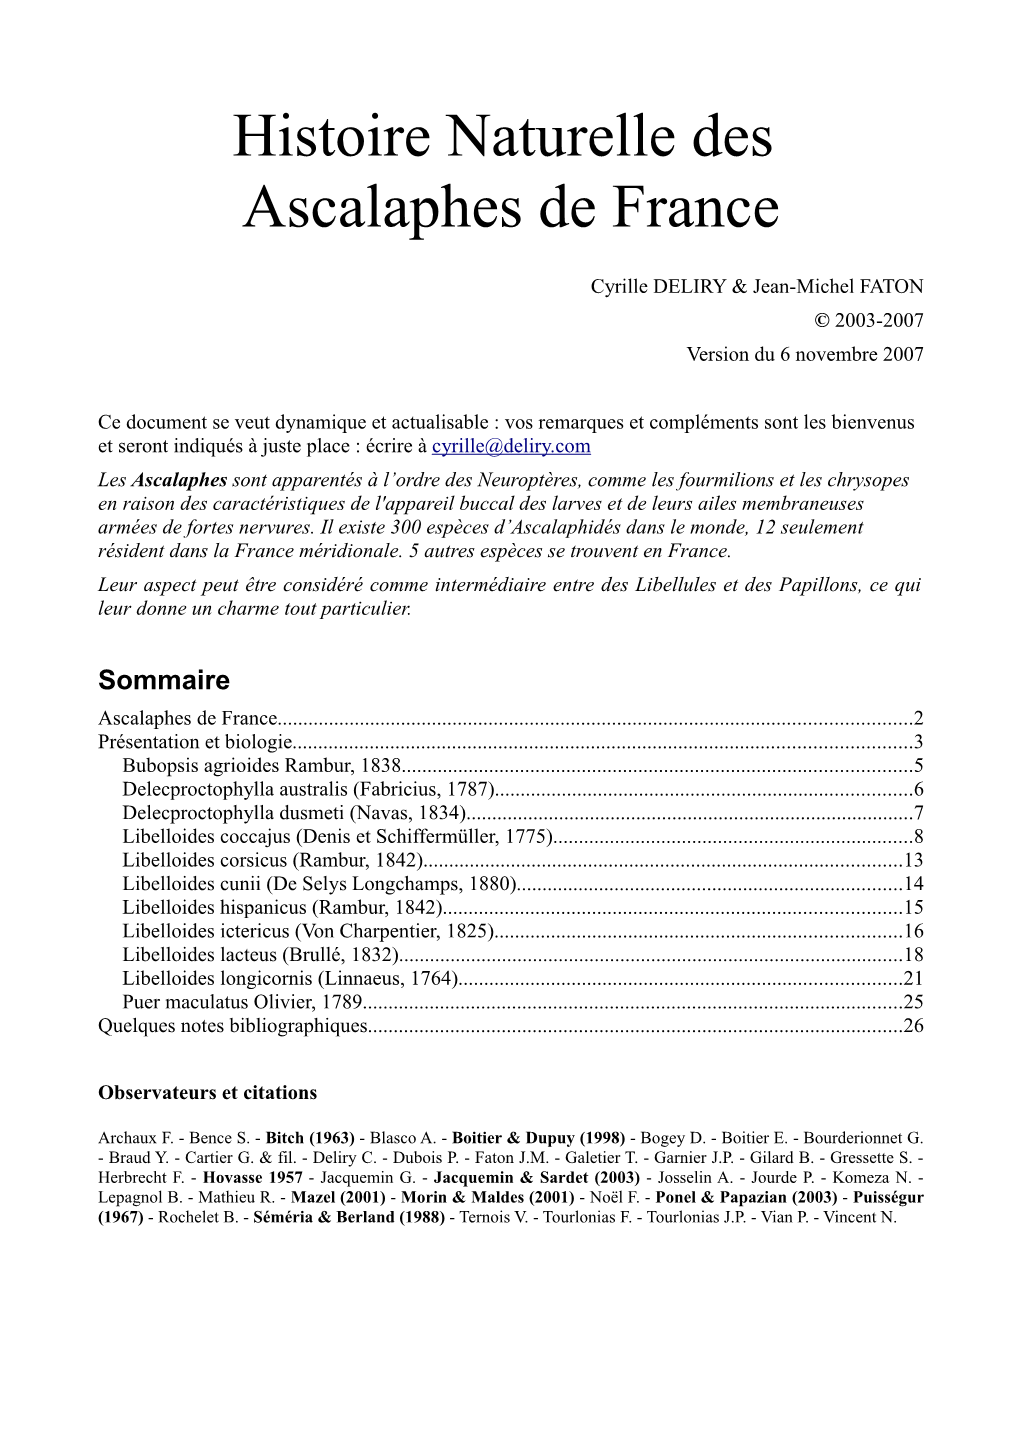 Histoire Naturelle Des Ascalaphes De France